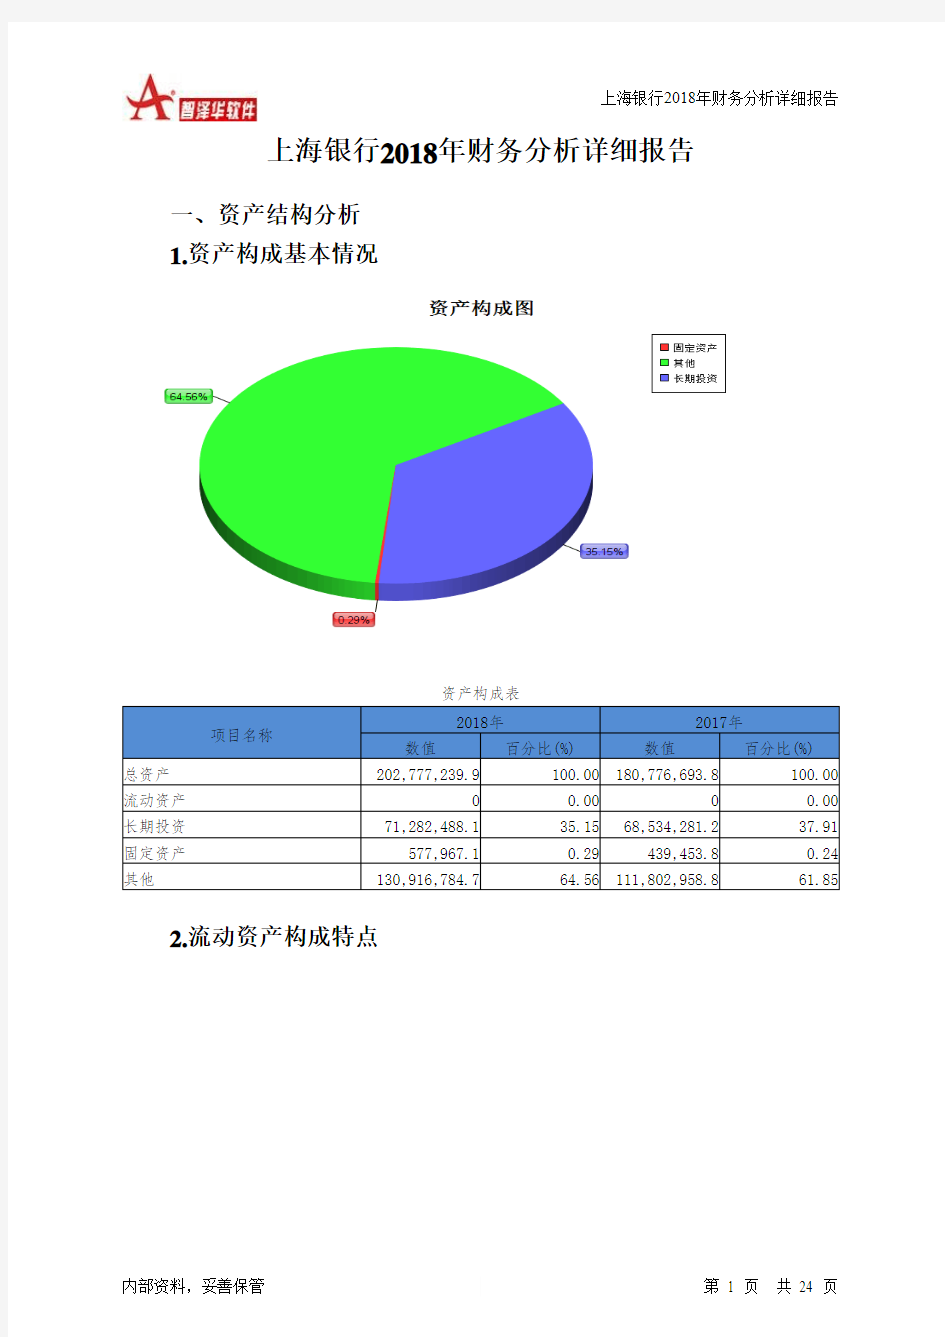 上海银行2018年财务分析详细报告-智泽华